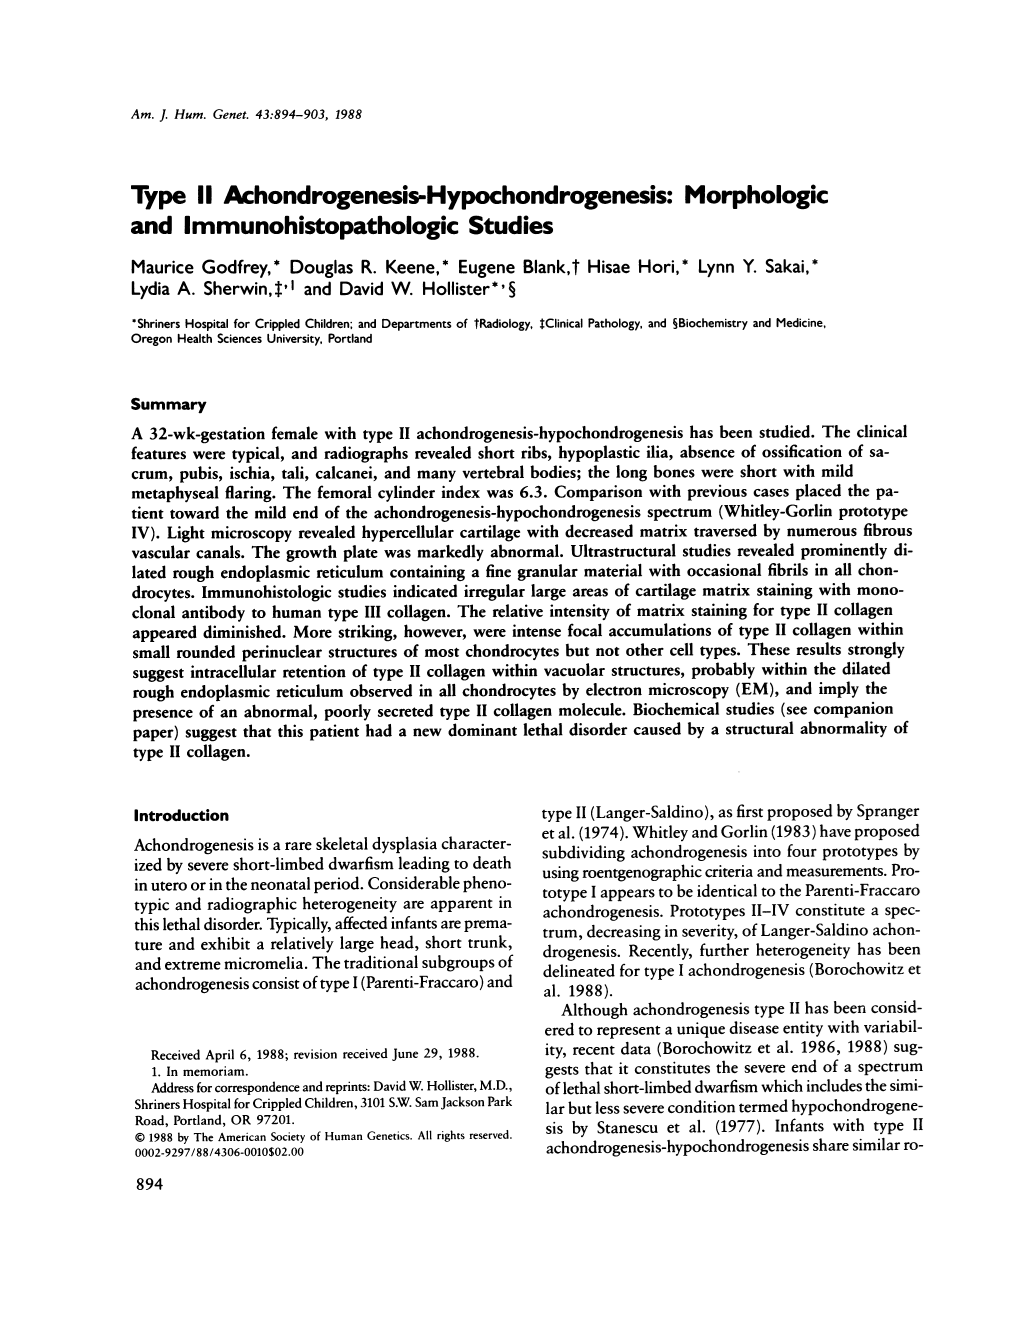 Morphologic and Immunohistopathologic Studies Maurice Godfrey,* Douglas R